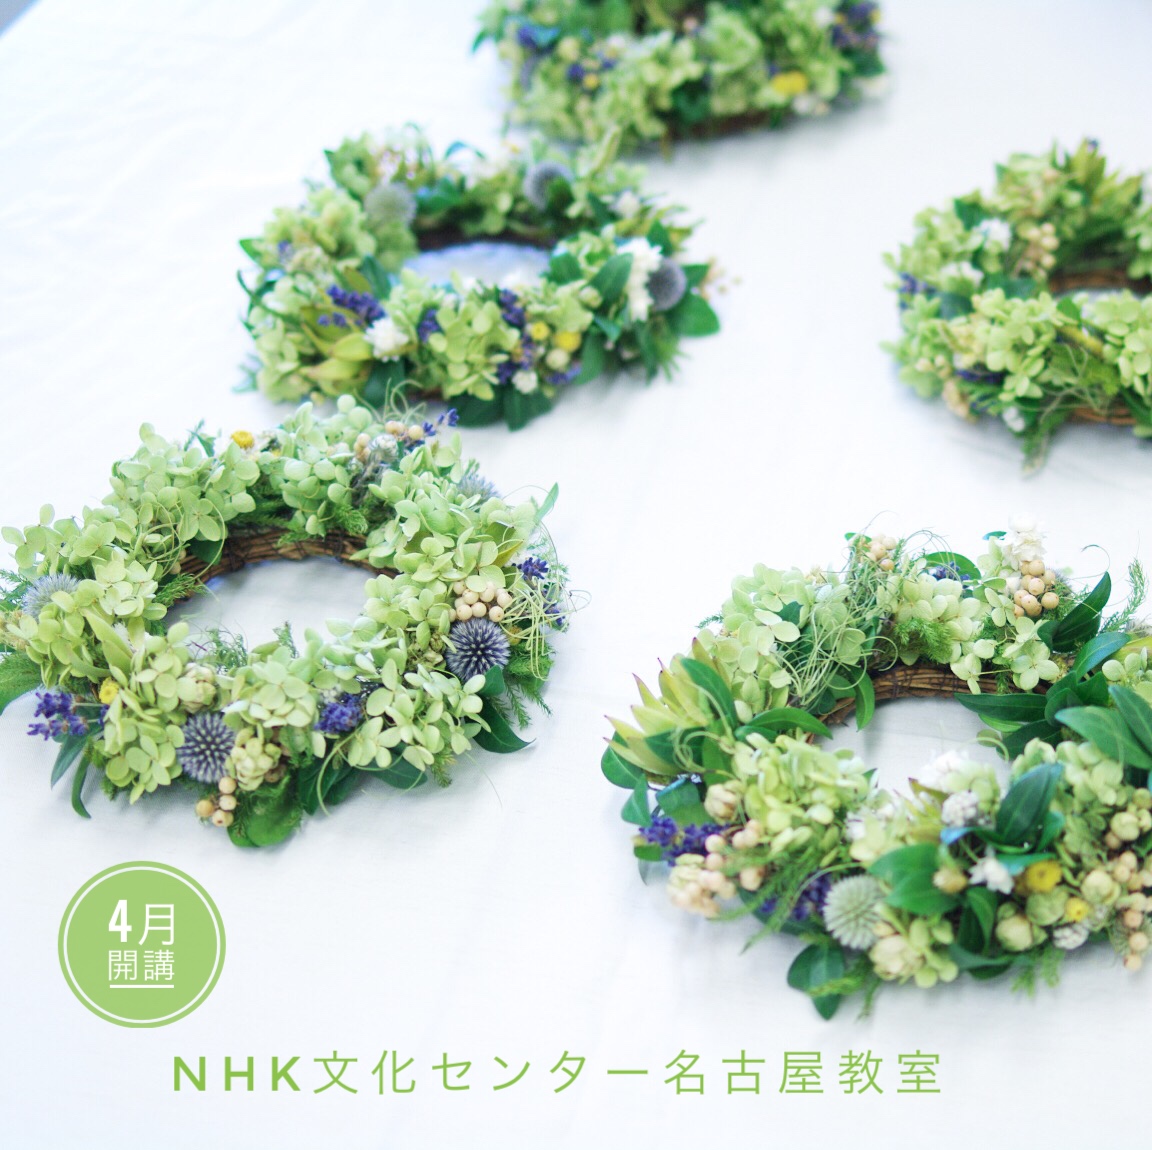 NHK文化センター名古屋教室定期講座4月開講